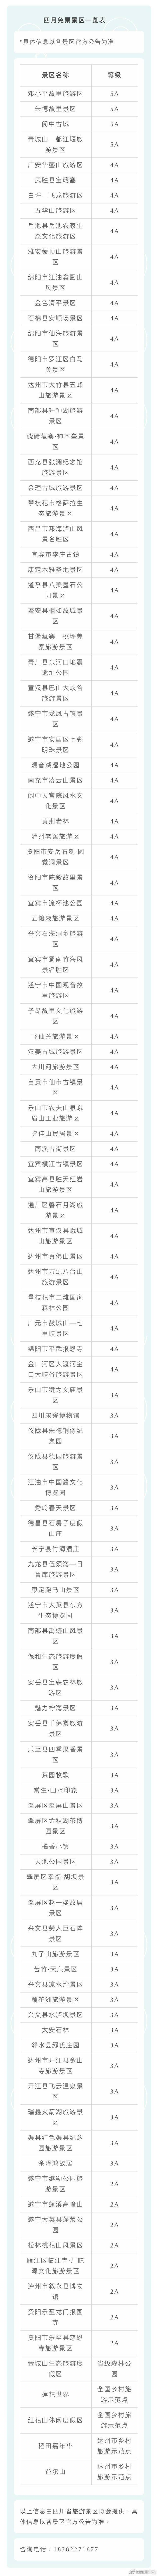 四川4月免门票景区名单